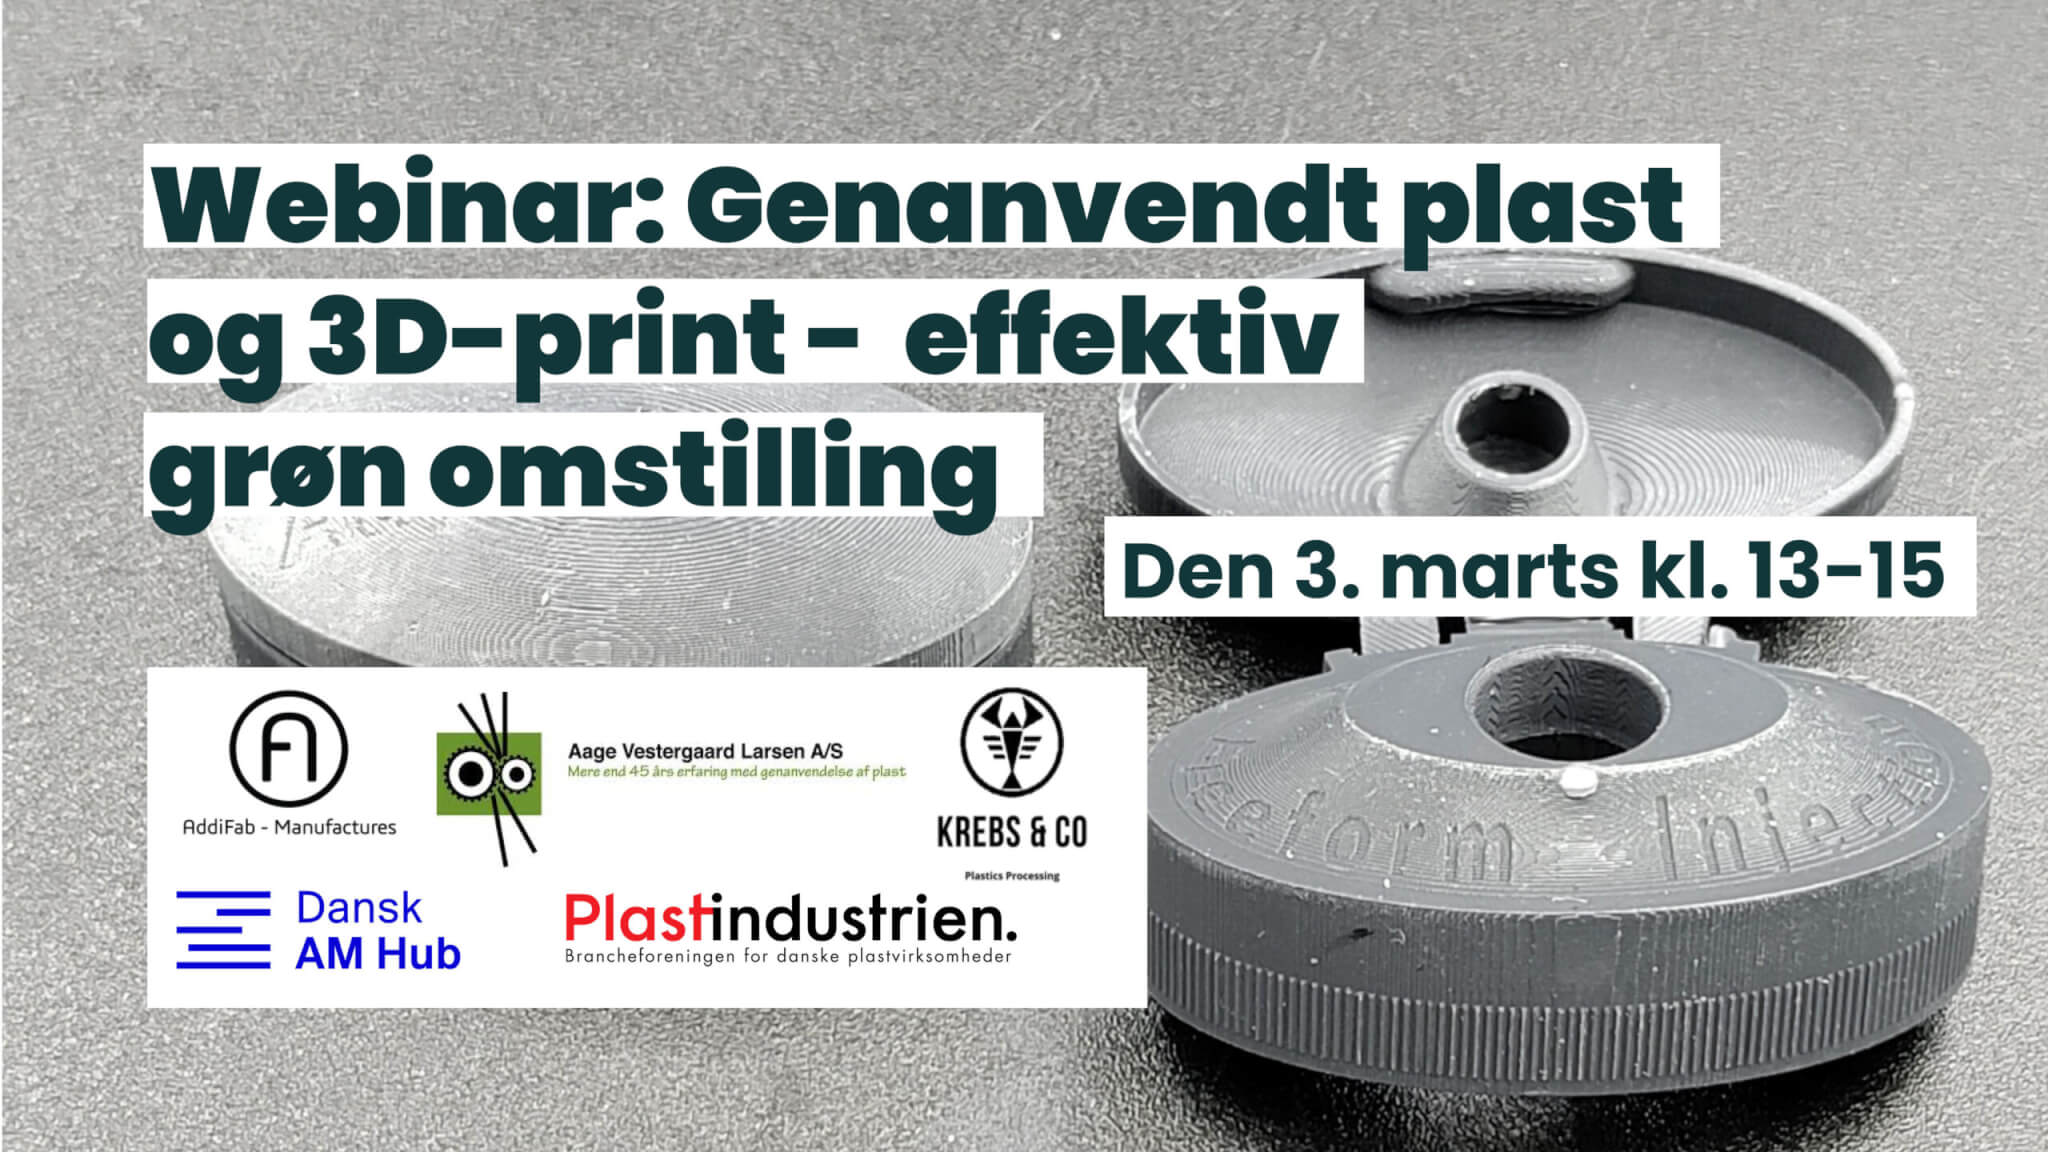 Webinar: Genanvendt og 3D-print – effektiv omstilling | plast.dk